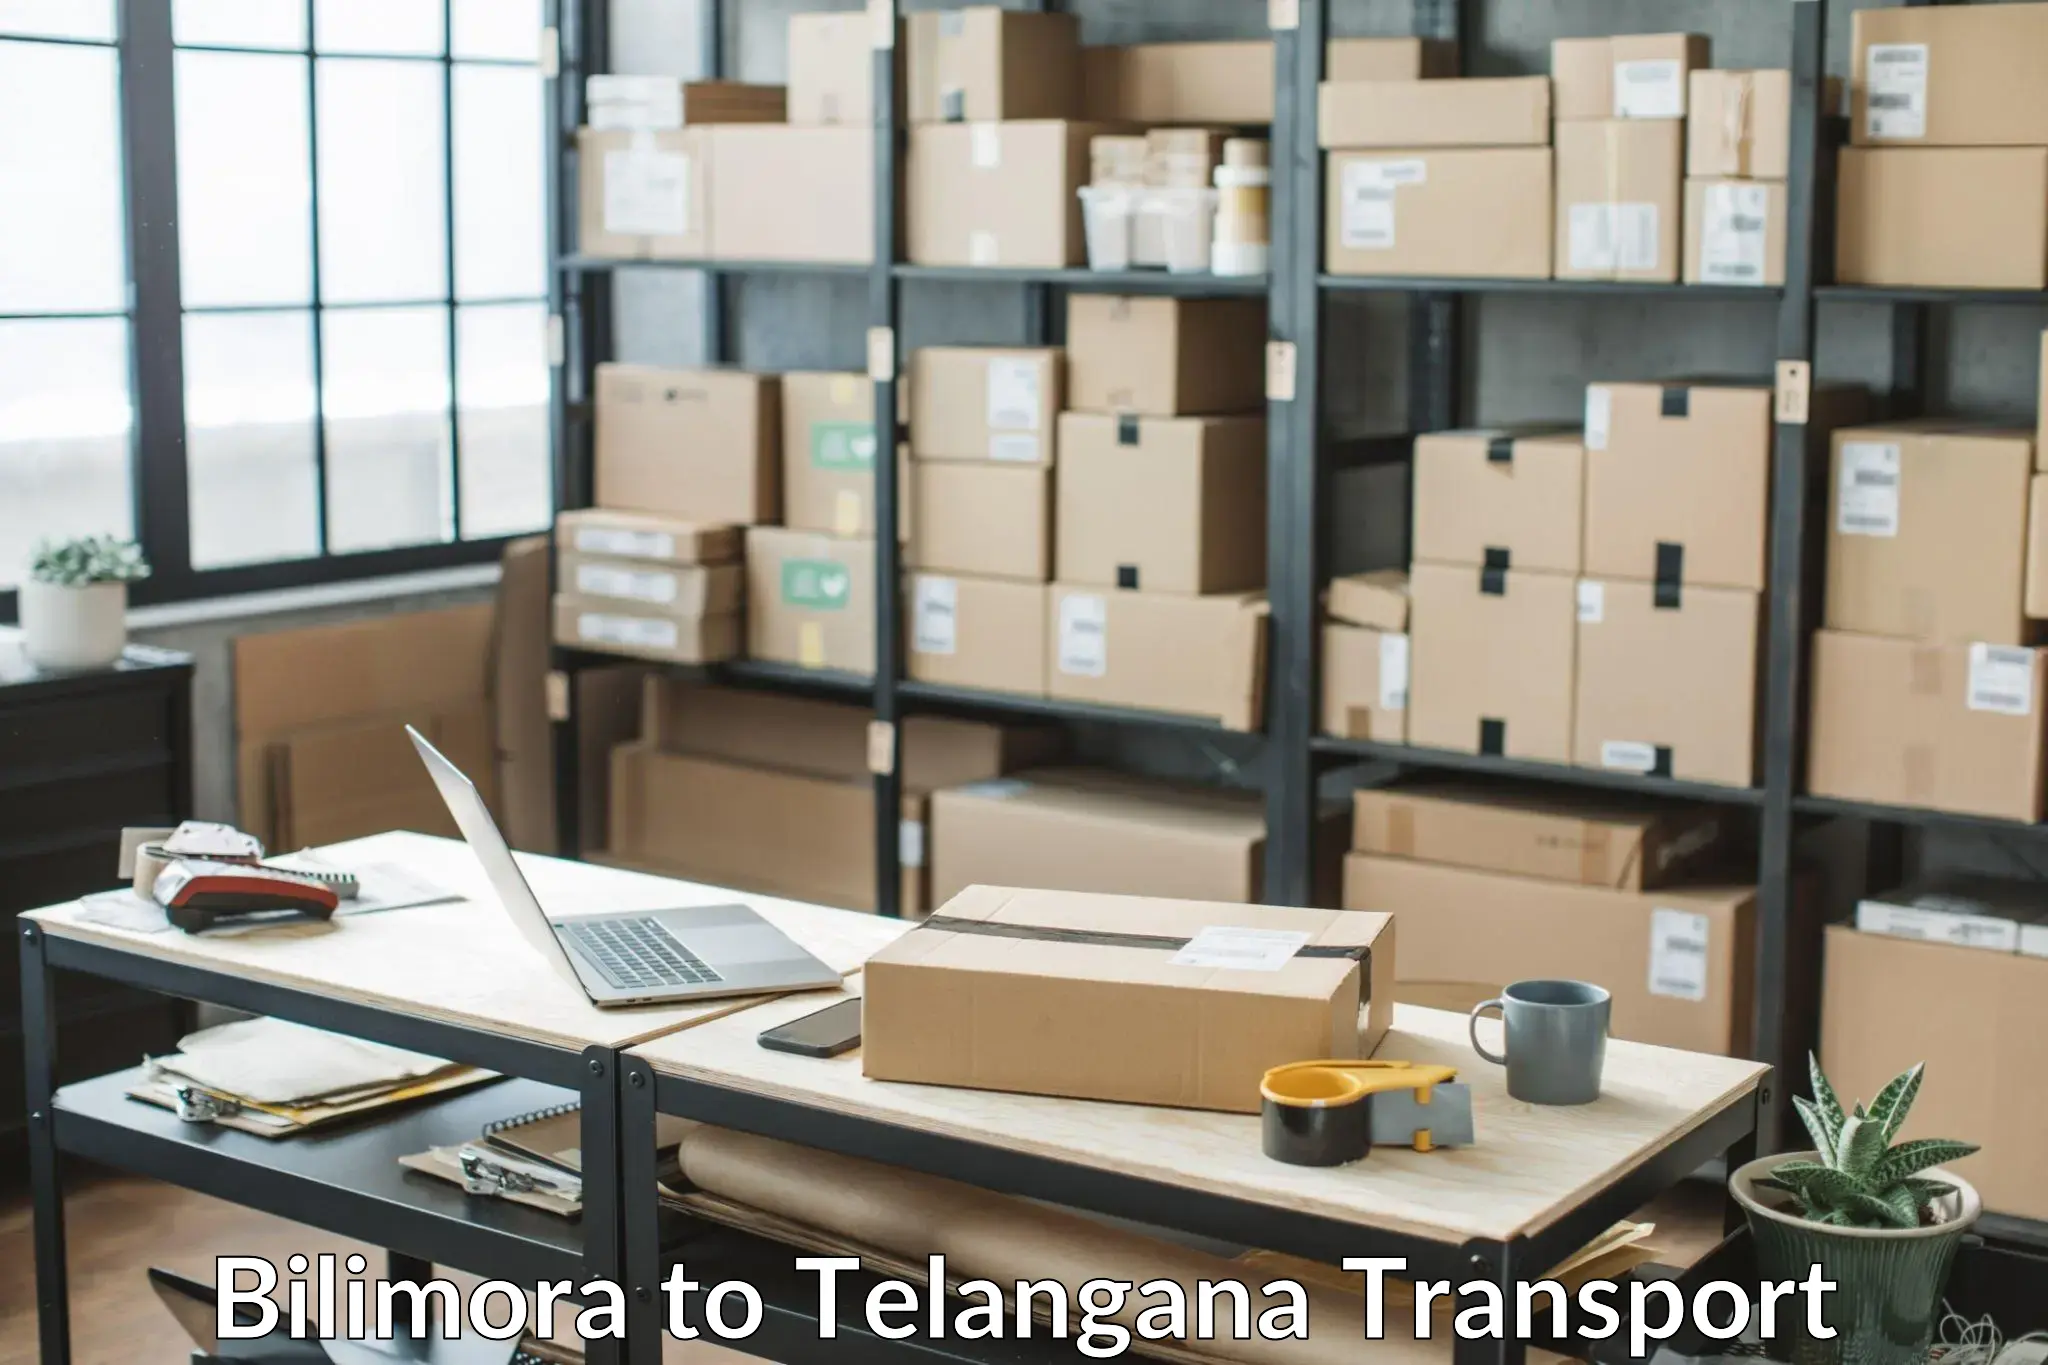 Transport in sharing Bilimora to Gangadhara